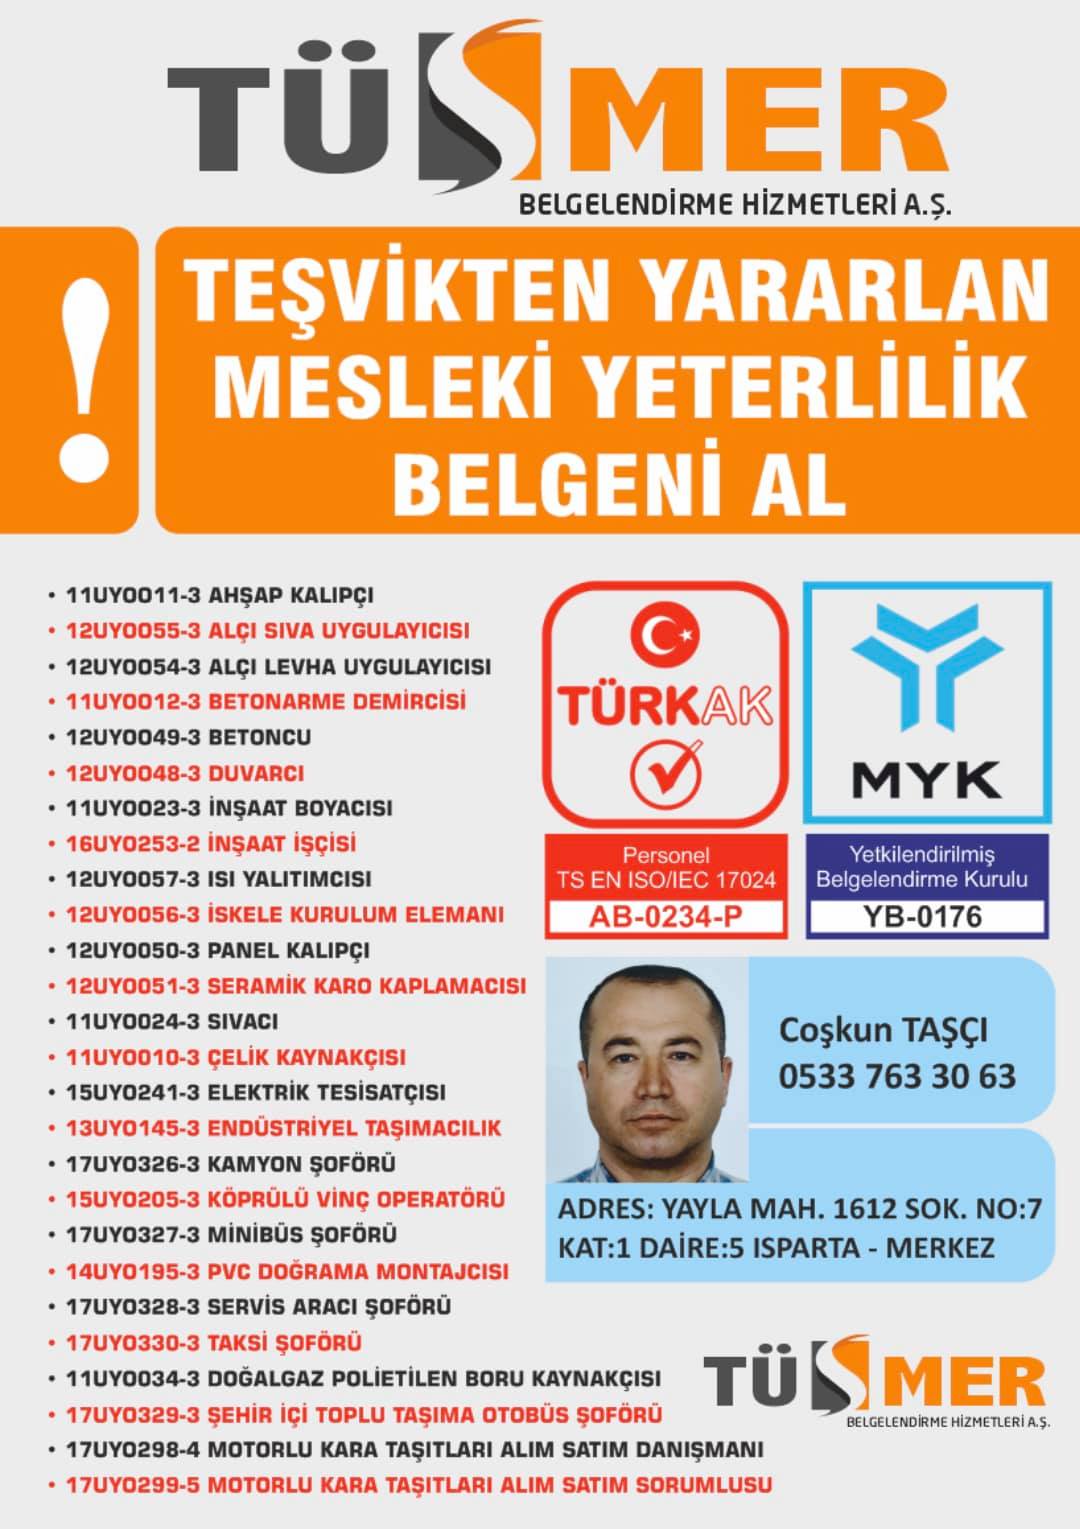 MYK MESLEKİ YETERLİLİK BELGESİ Altınşehir Başakşehir İstanbul